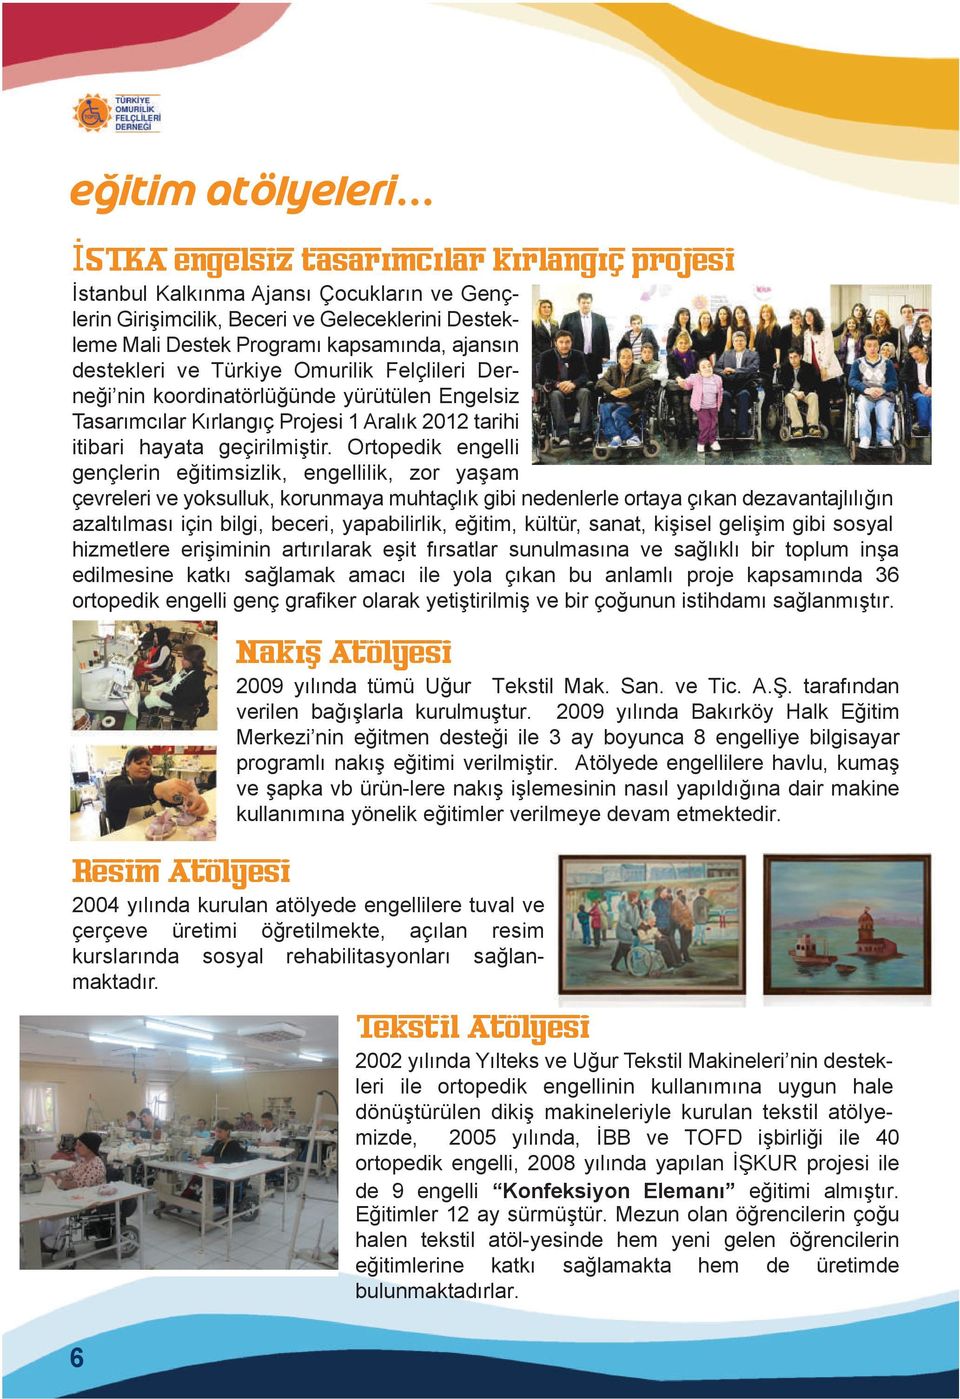 ve Türkiye Omurilik Felçlileri Derneği nin koordinatörlüğünde yürütülen Engelsiz Tasarımcılar Kırlangıç Projesi 1 Aralık 2012 tarihi itibari hayata geçirilmiştir.